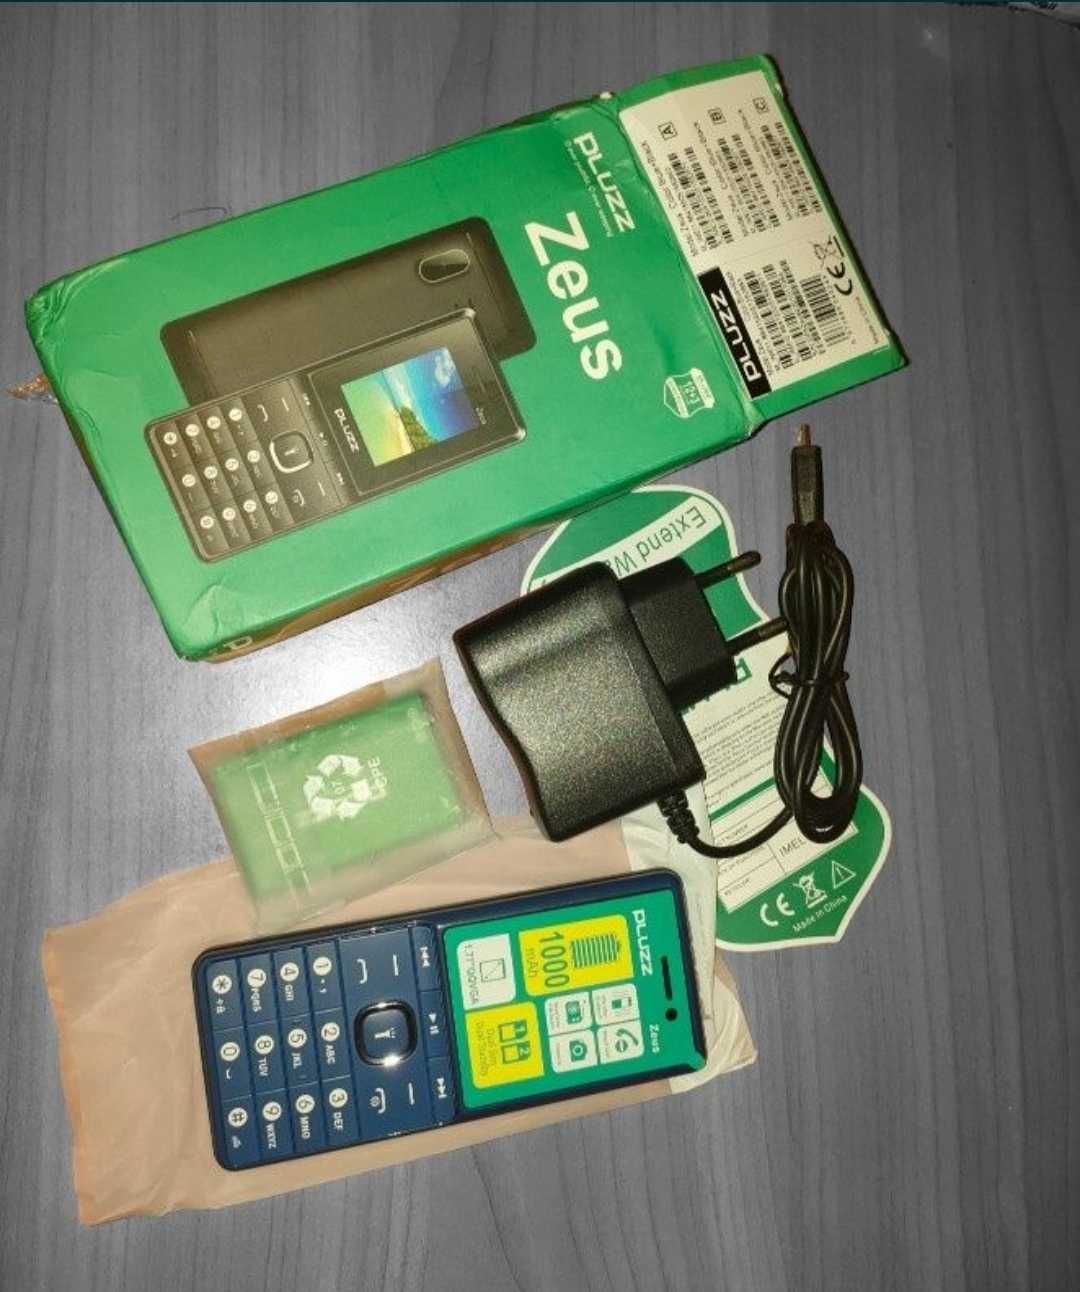 Новый 2 сим. мобильный телефон PLUZZ M1818A Zeus